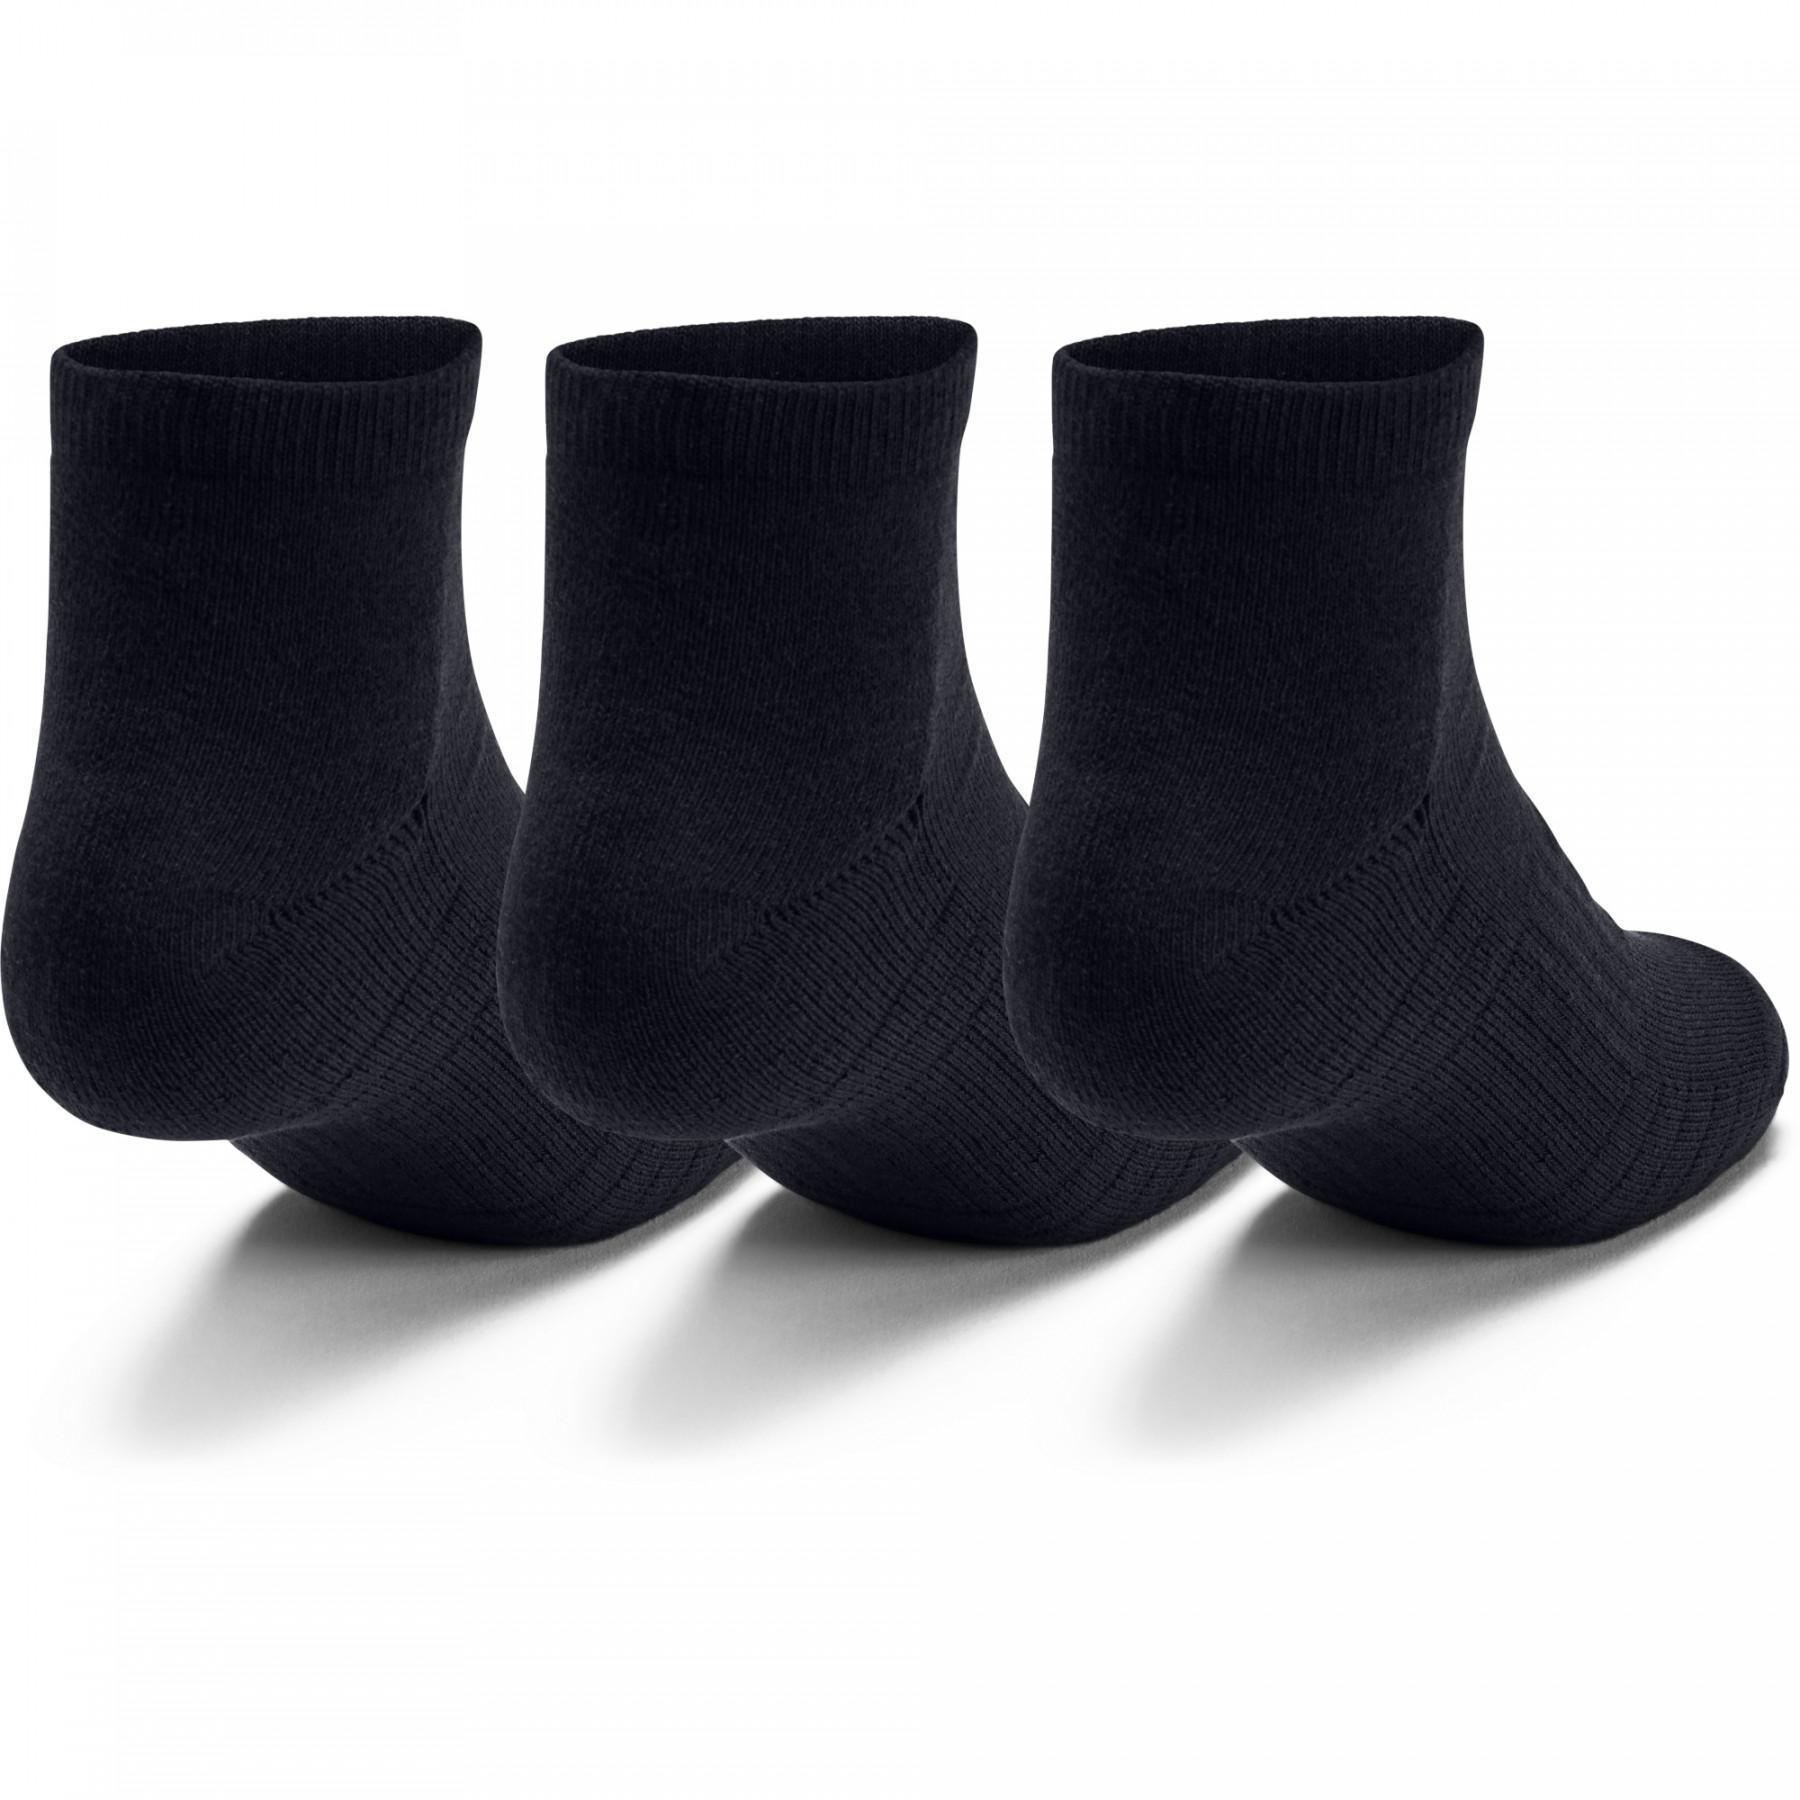 Packung mit 3 Paar niedrigen Socken Under Armour Training Coton